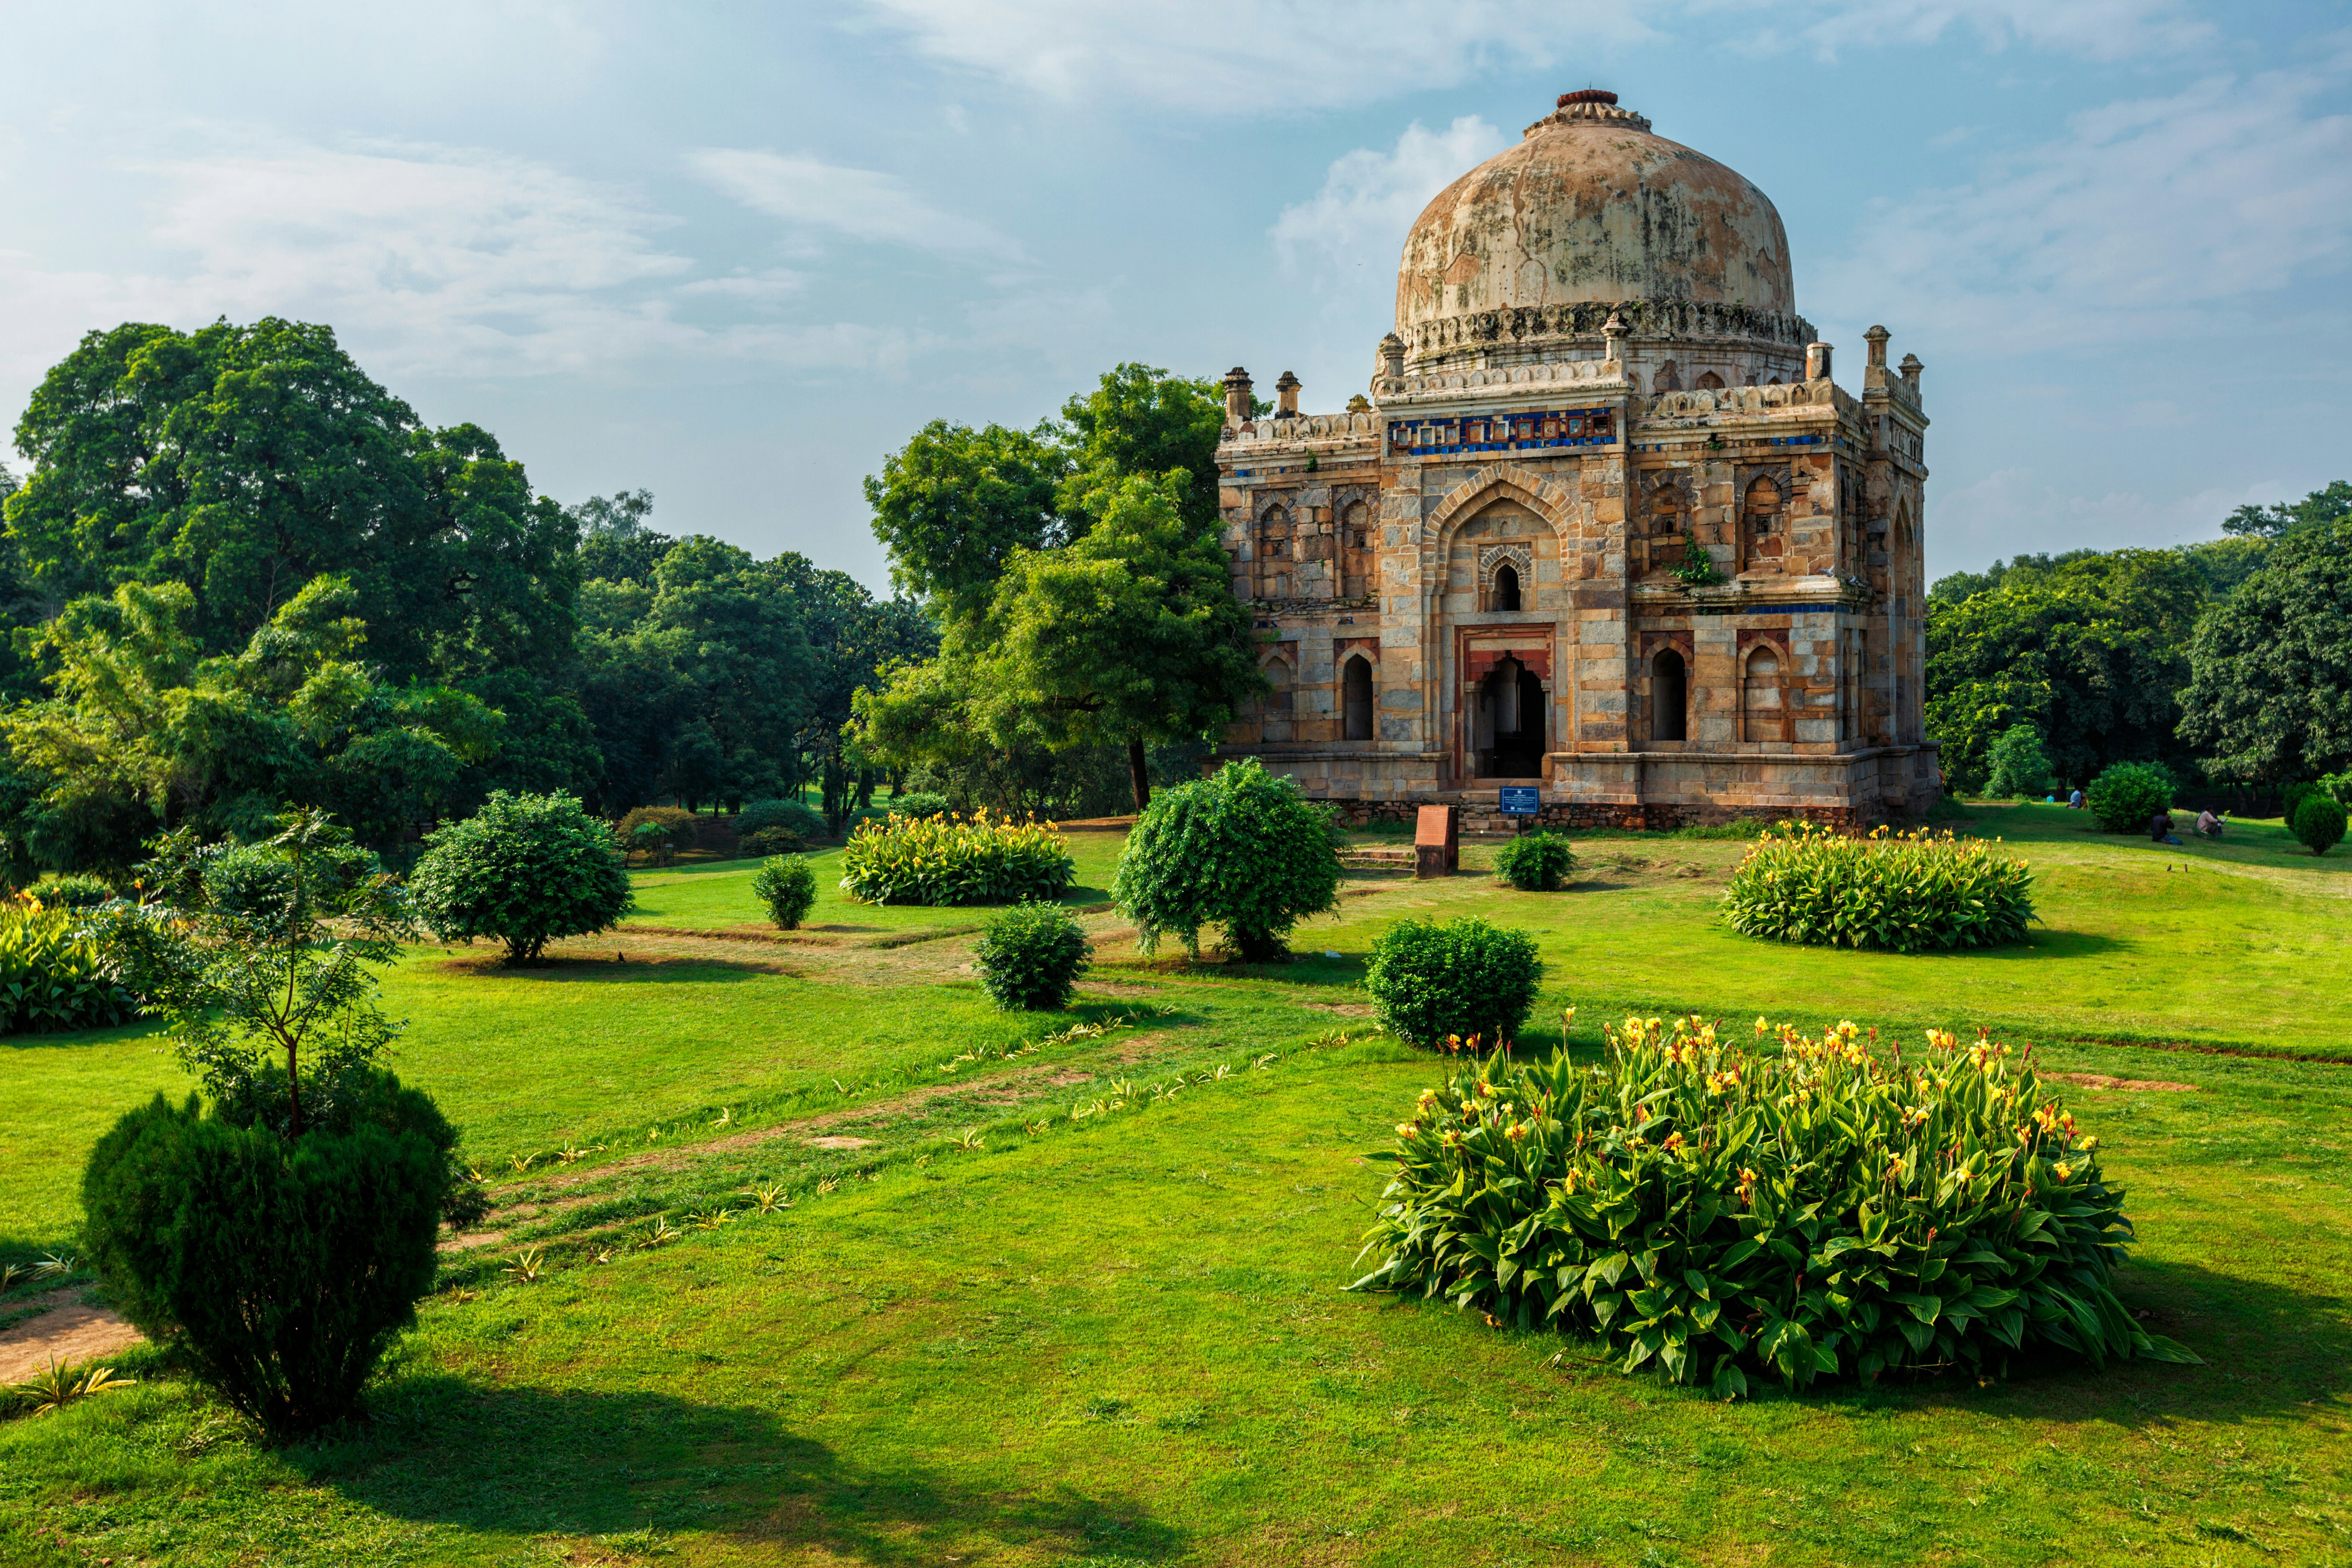 Rehevä puutarha ja historiallinen kupolin muotoinen rakennus kirkkaan sinisen taivaan alla Delhissä.